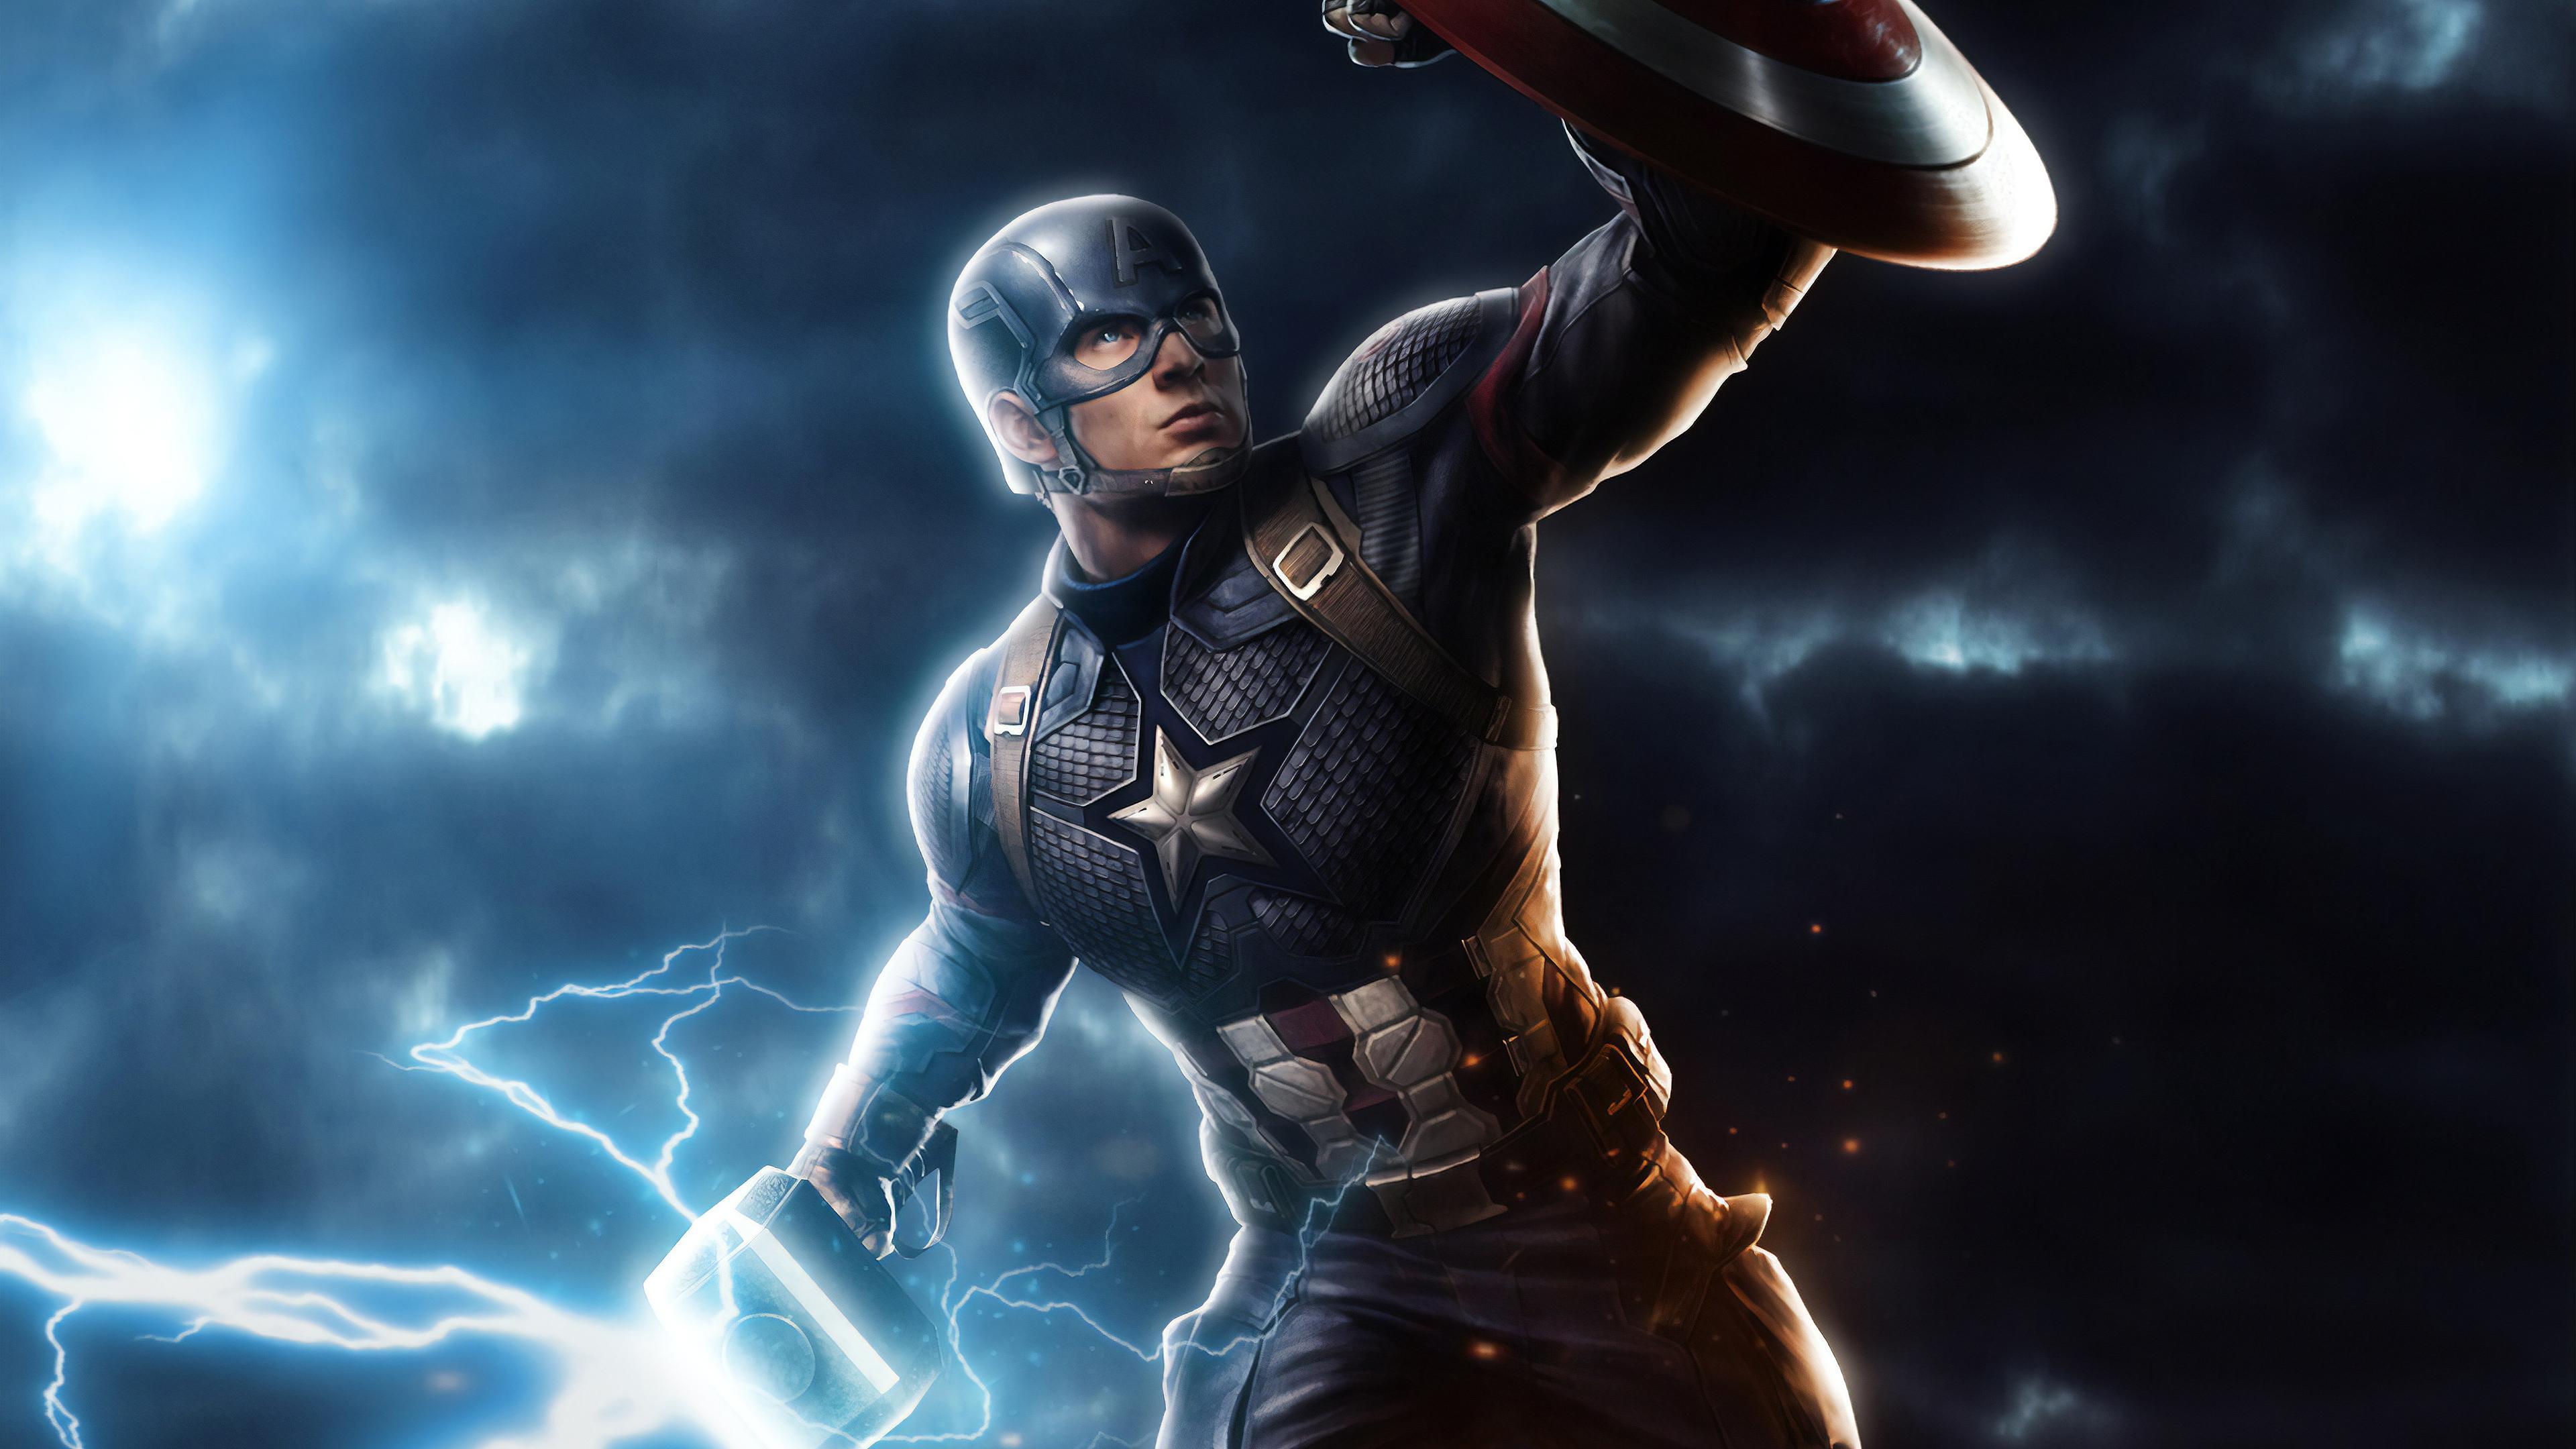 Captain America Mjolnir Avengers Endgame 4k Art, HD